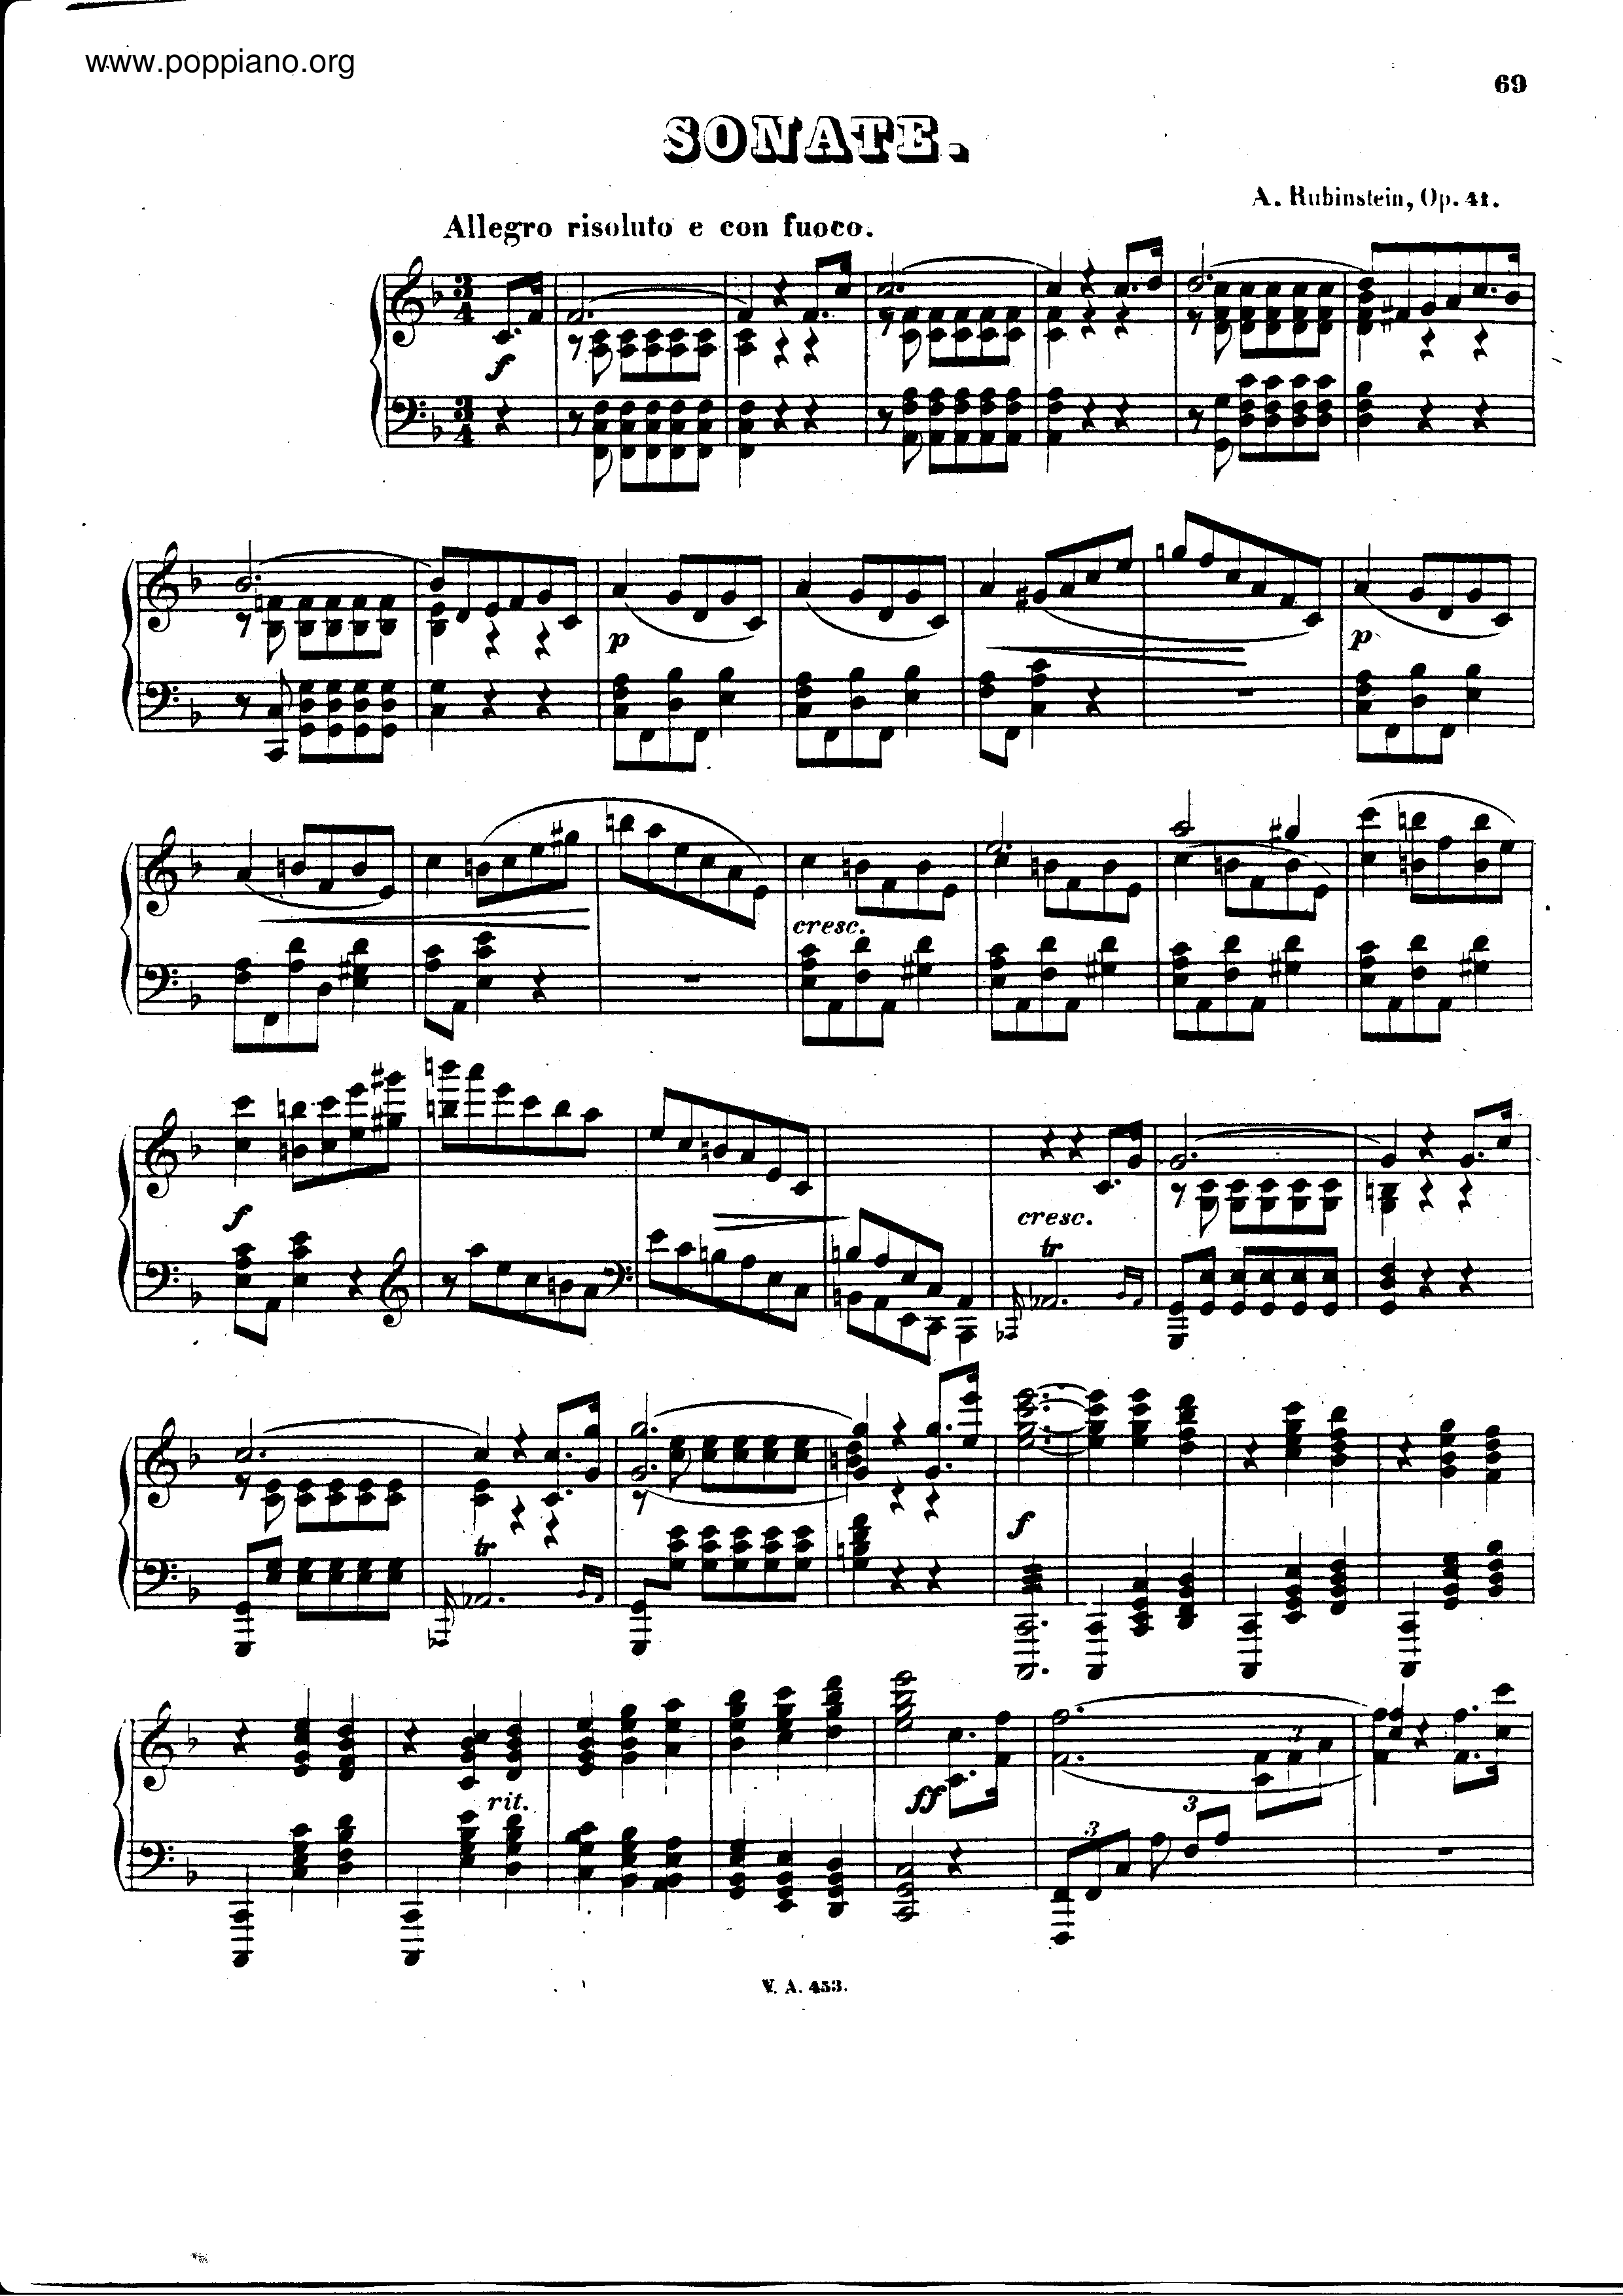 Piano sonata no.3 in F major, Op.41 Score